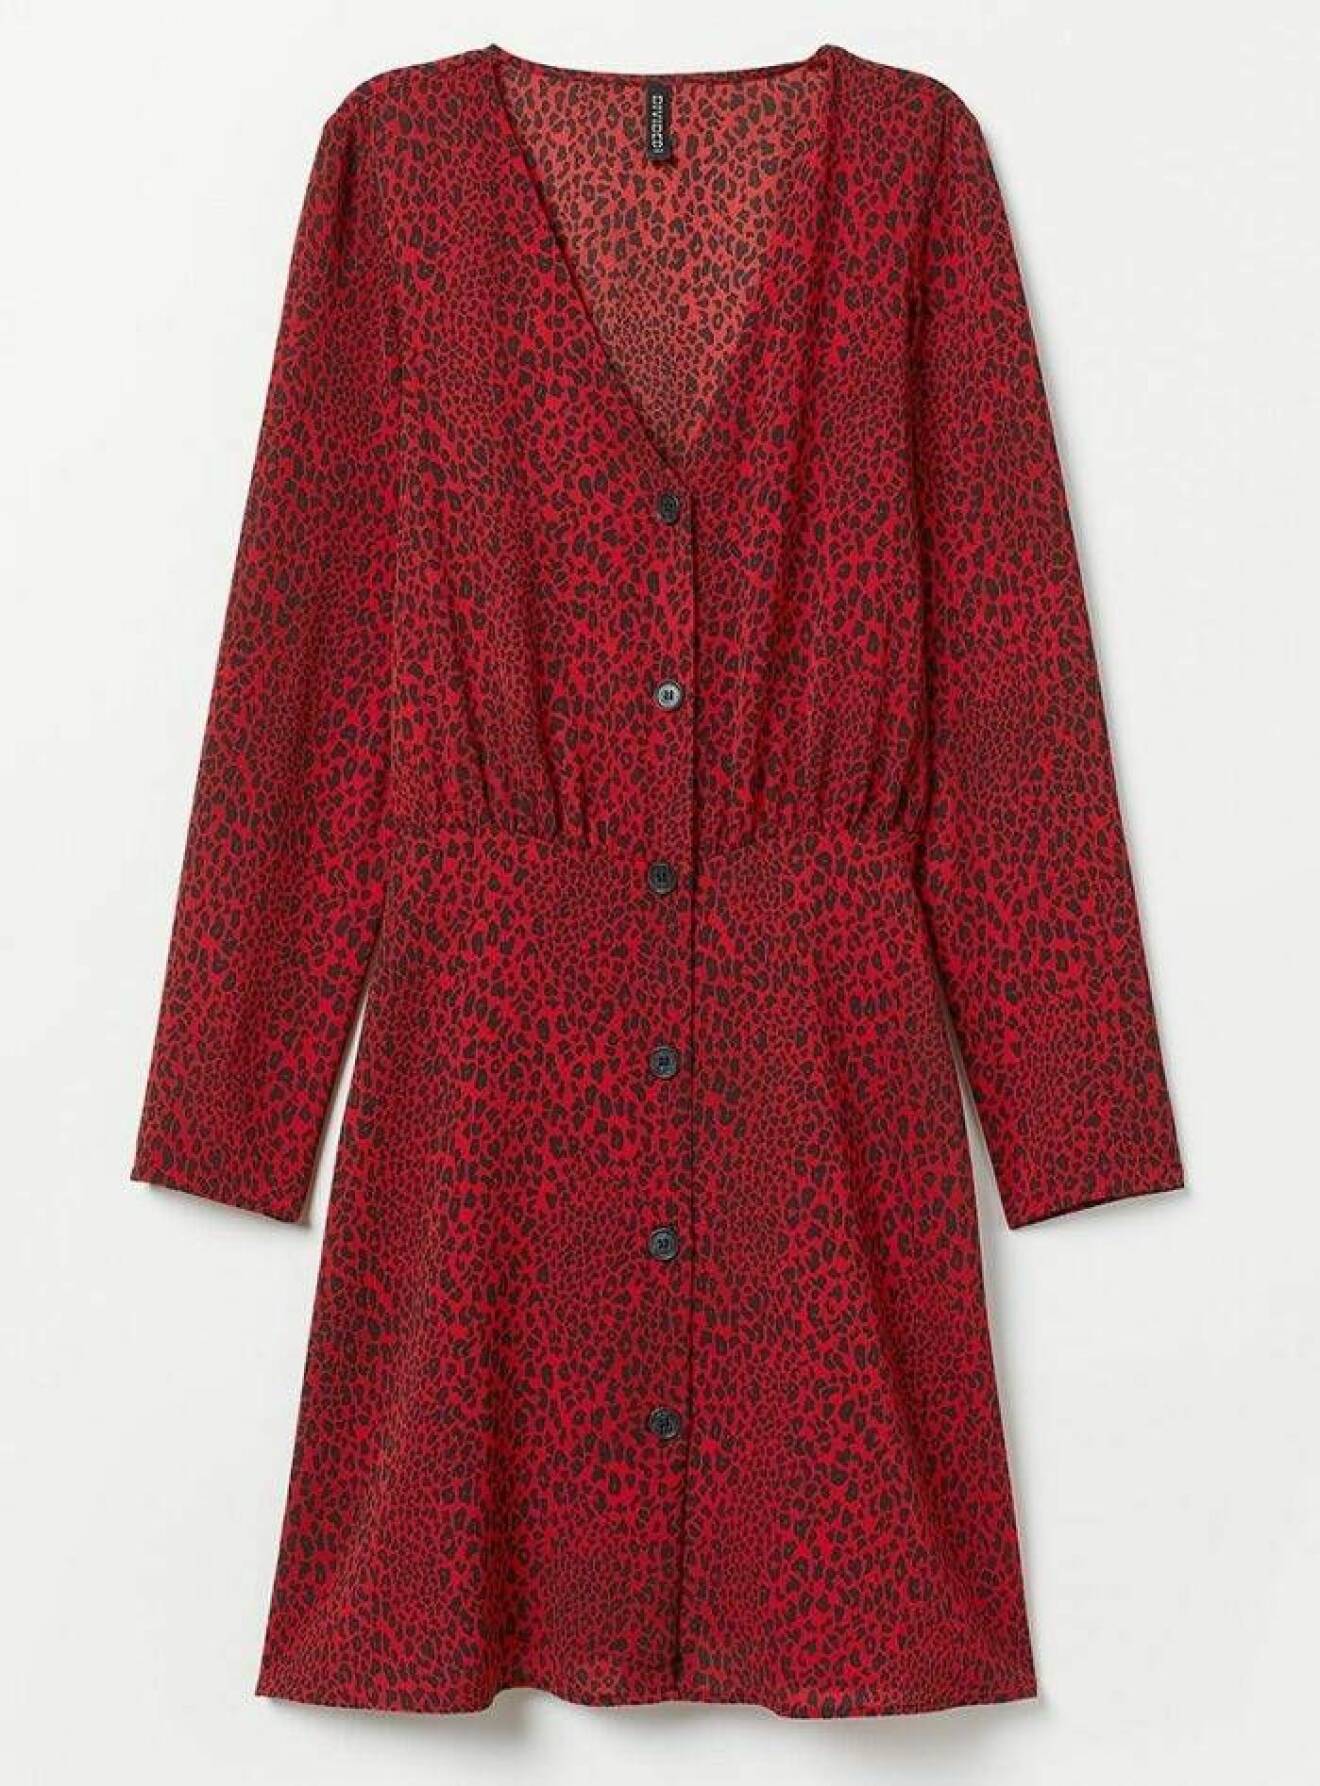 Röd leopardfläckig klänning från H&M